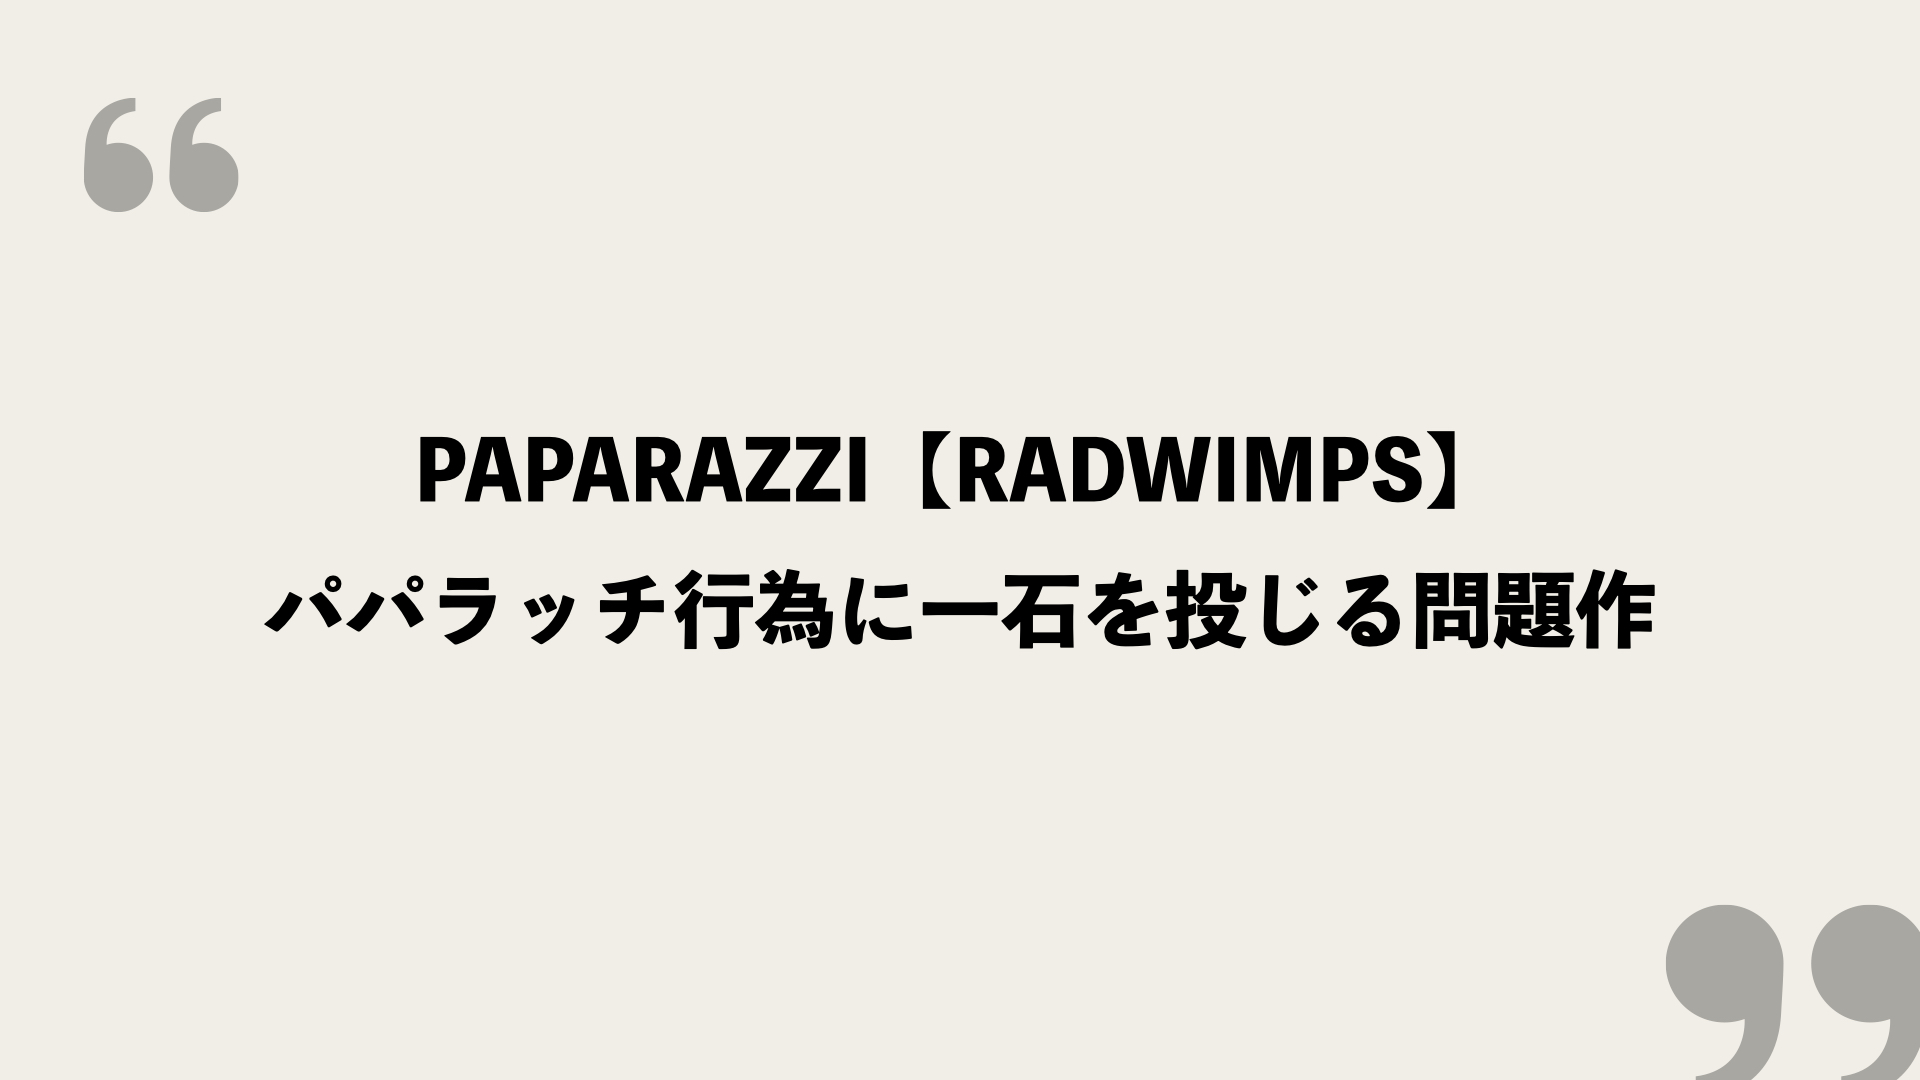 Paparazzi Radwimps 歌詞の意味を考察 パパラッチ行為に一石を投じる問題作 Framu Media